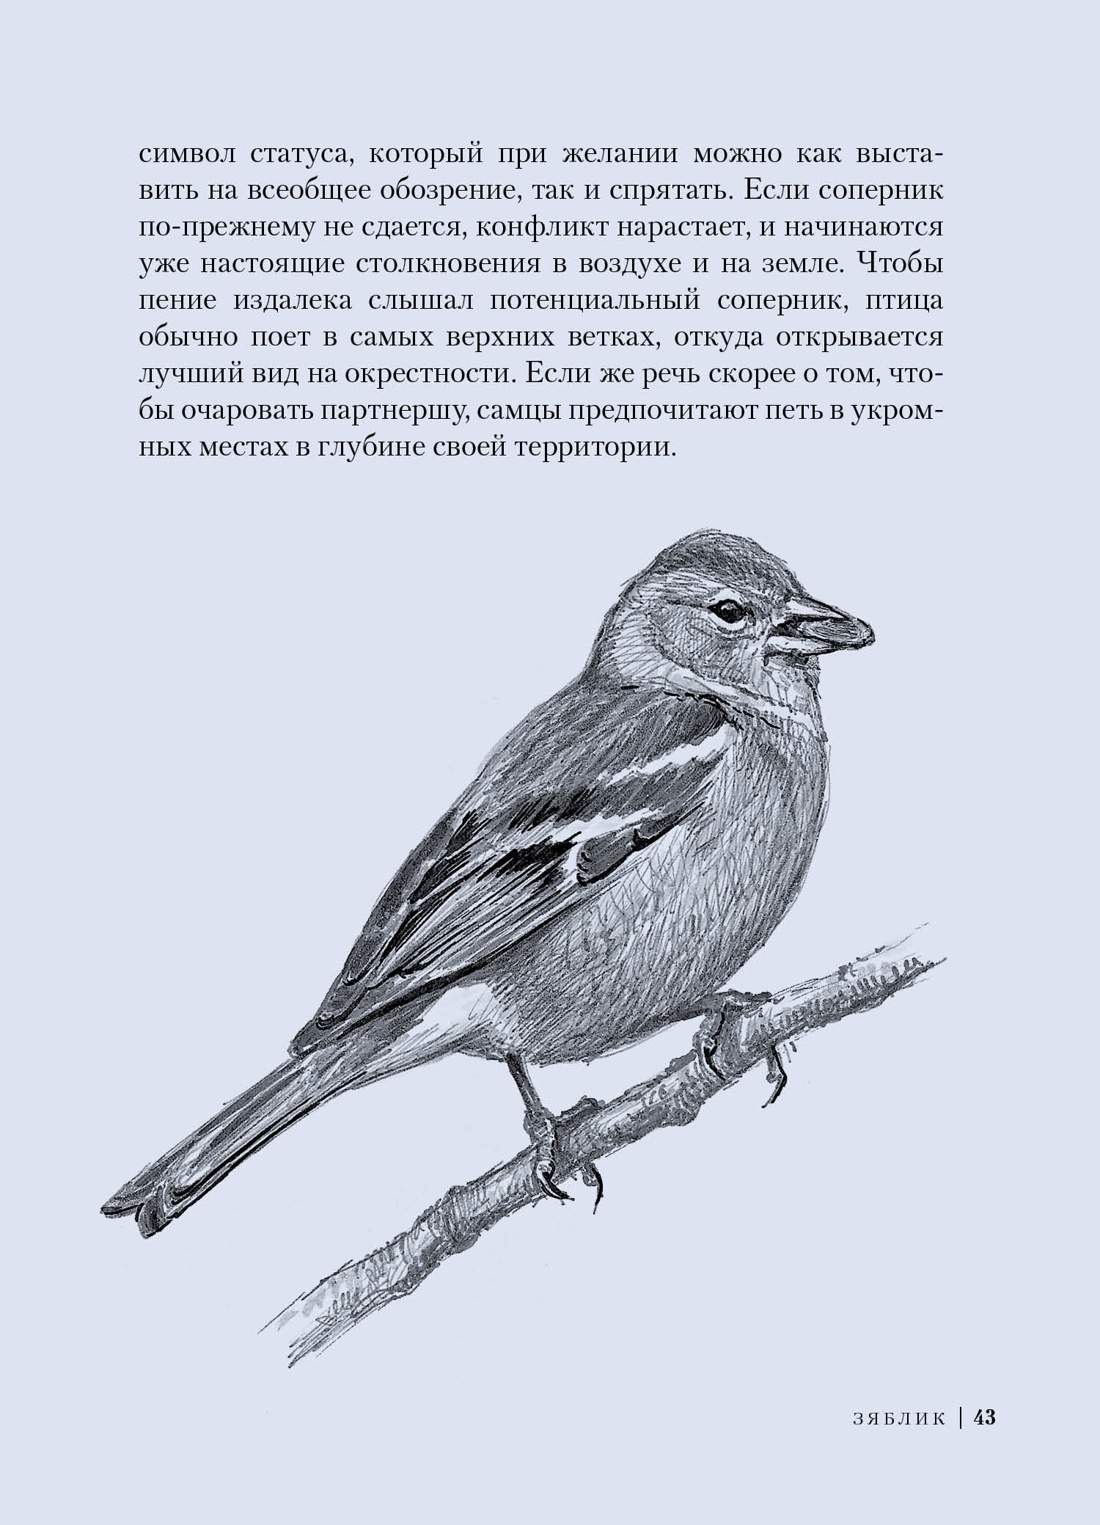 Птицы: Крылатые чудеса природы, Отрывок из книги